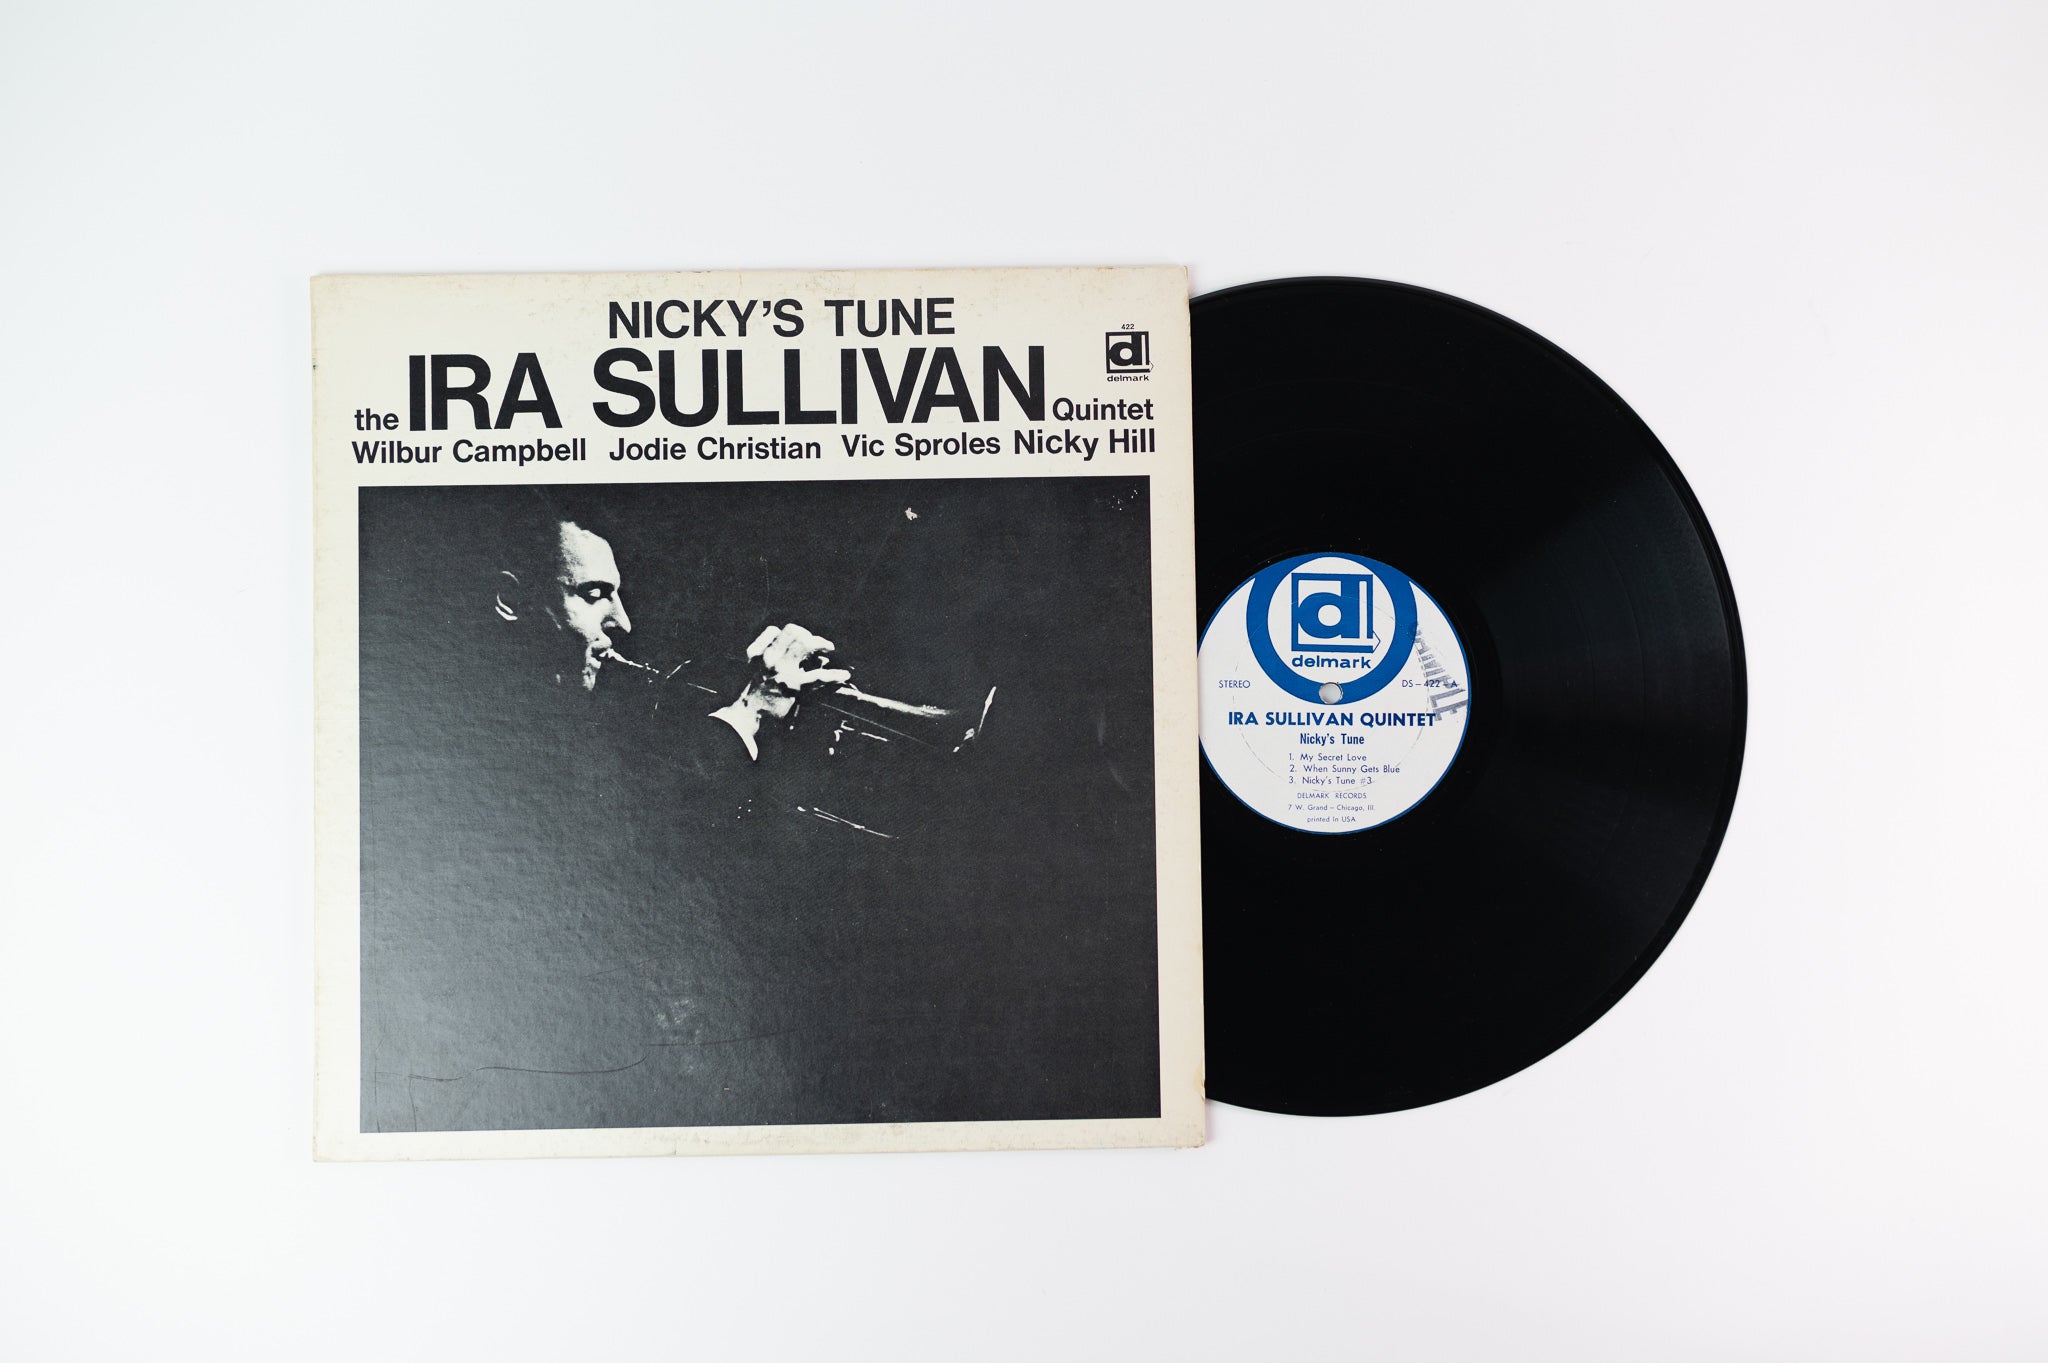 Ira Sullivan Quintet - Nicky's Tune on Delmark